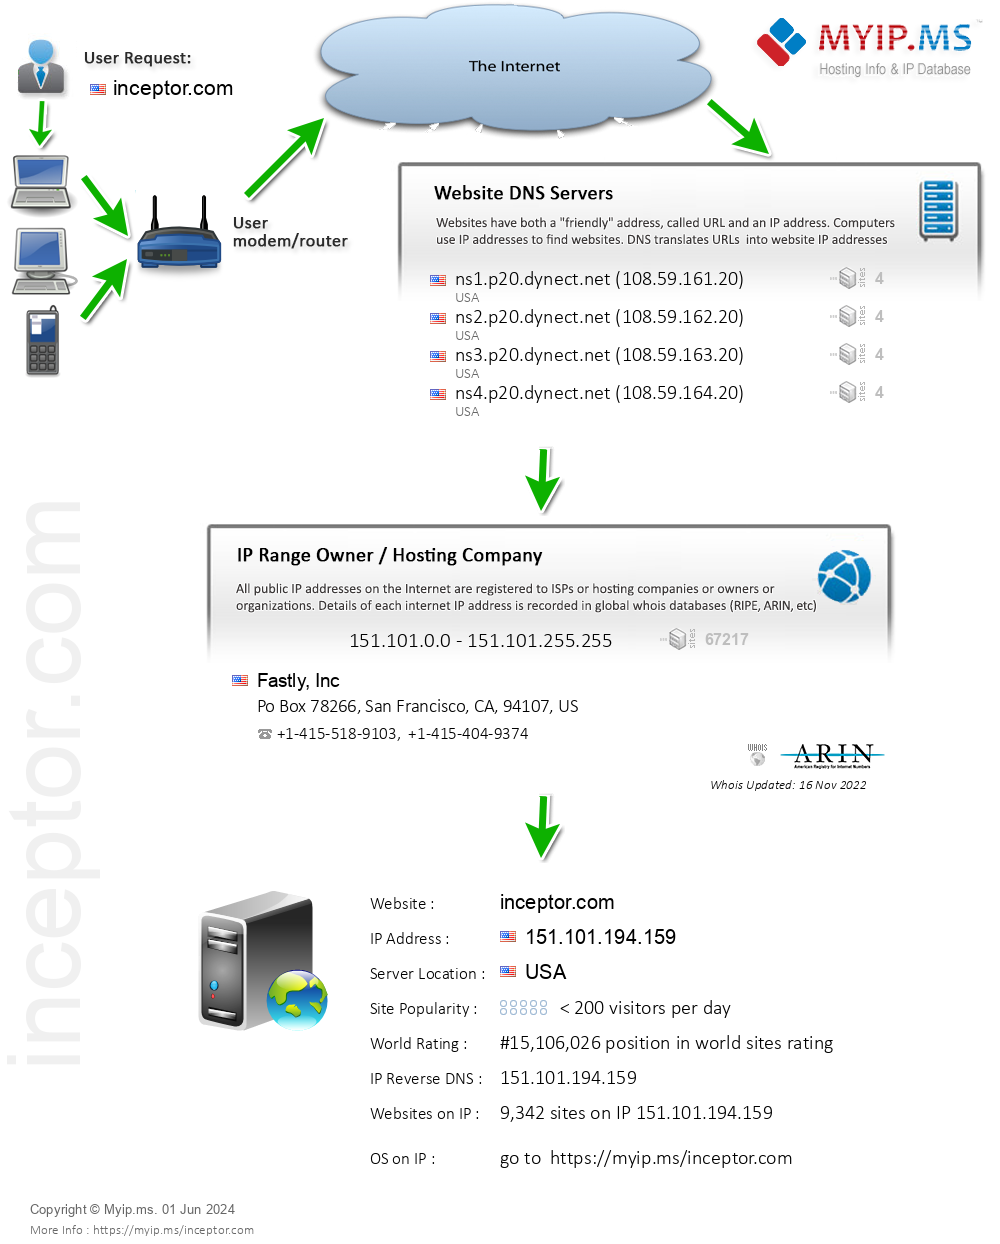 Inceptor.com - Website Hosting Visual IP Diagram